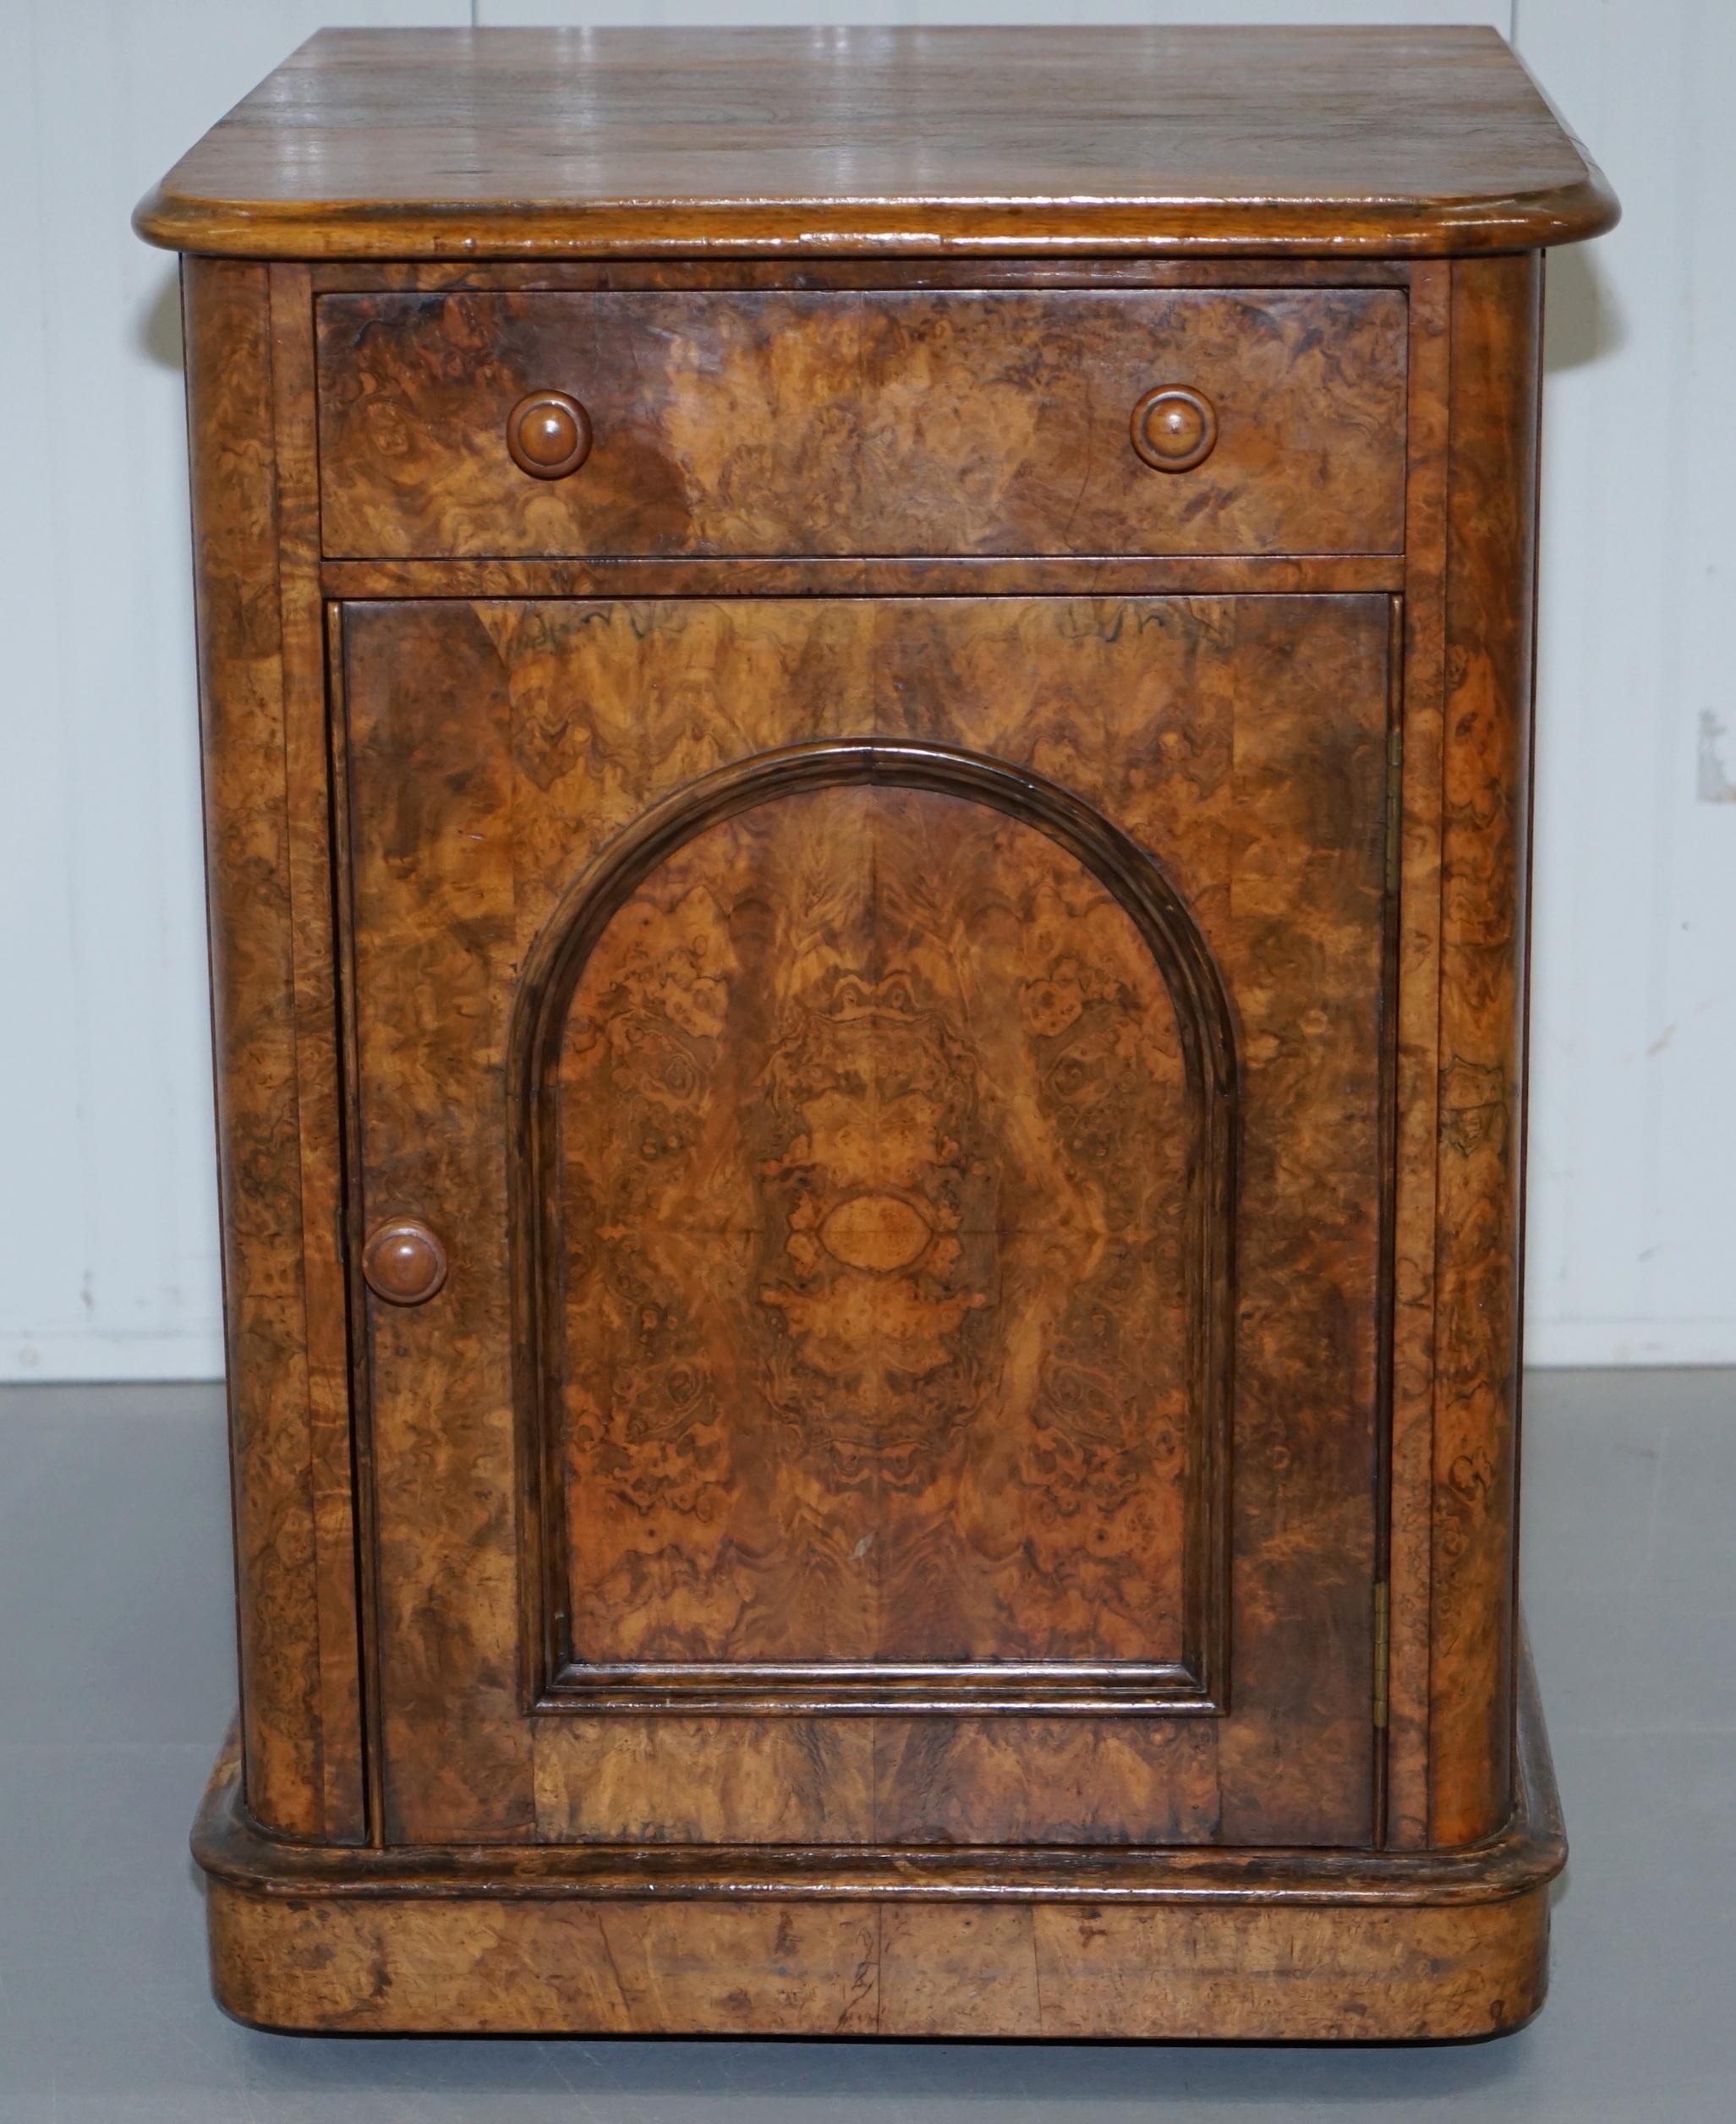 Hand-Carved Lovely 1860 Victorian Burr Walnut Side Table Cupboard Cabinet Huge Wood Castors